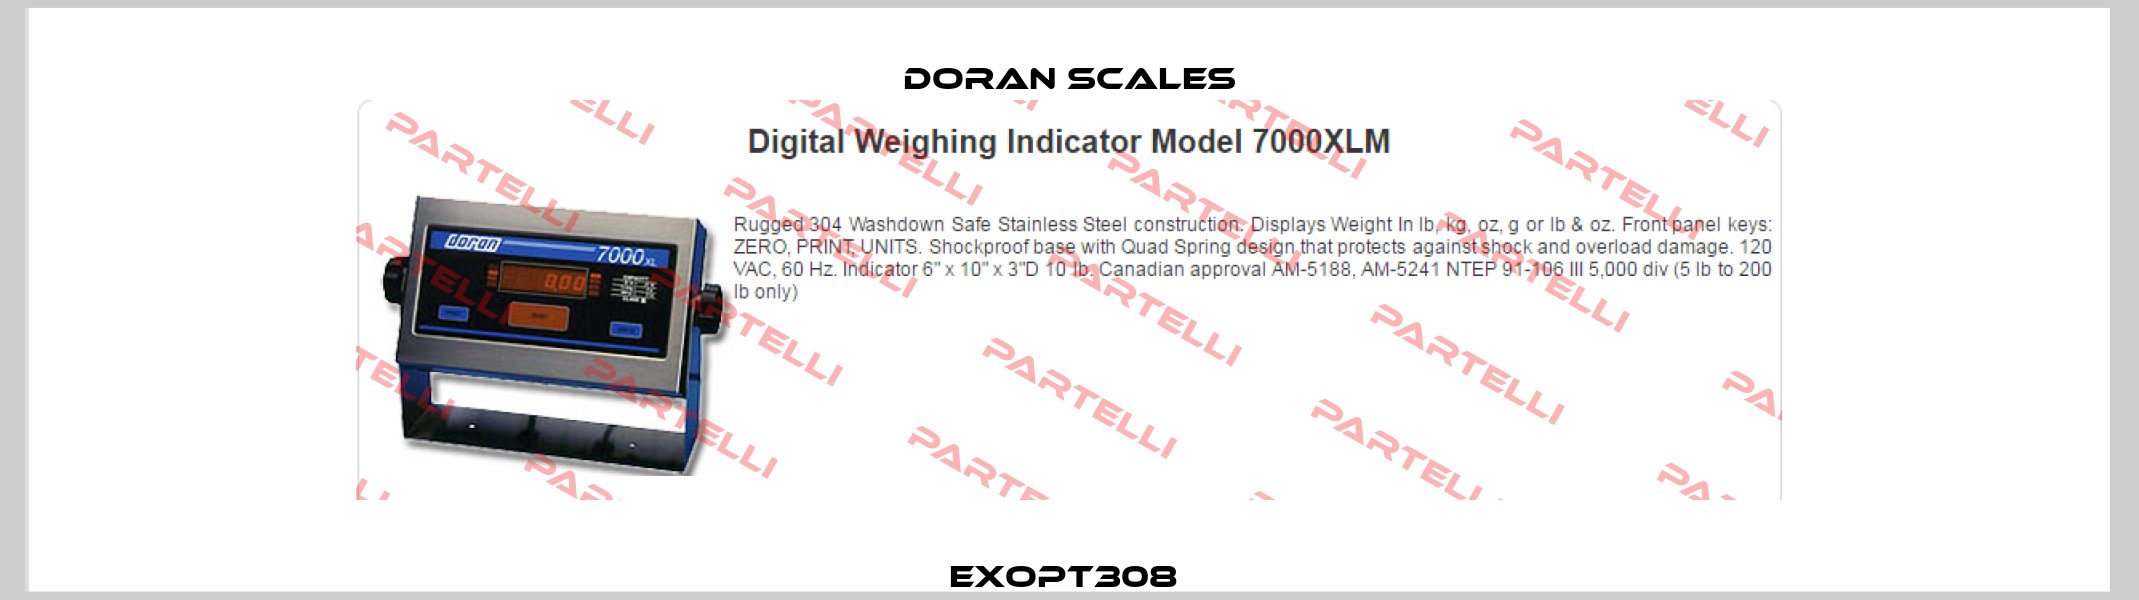 EXOPT308  DORAN SCALES